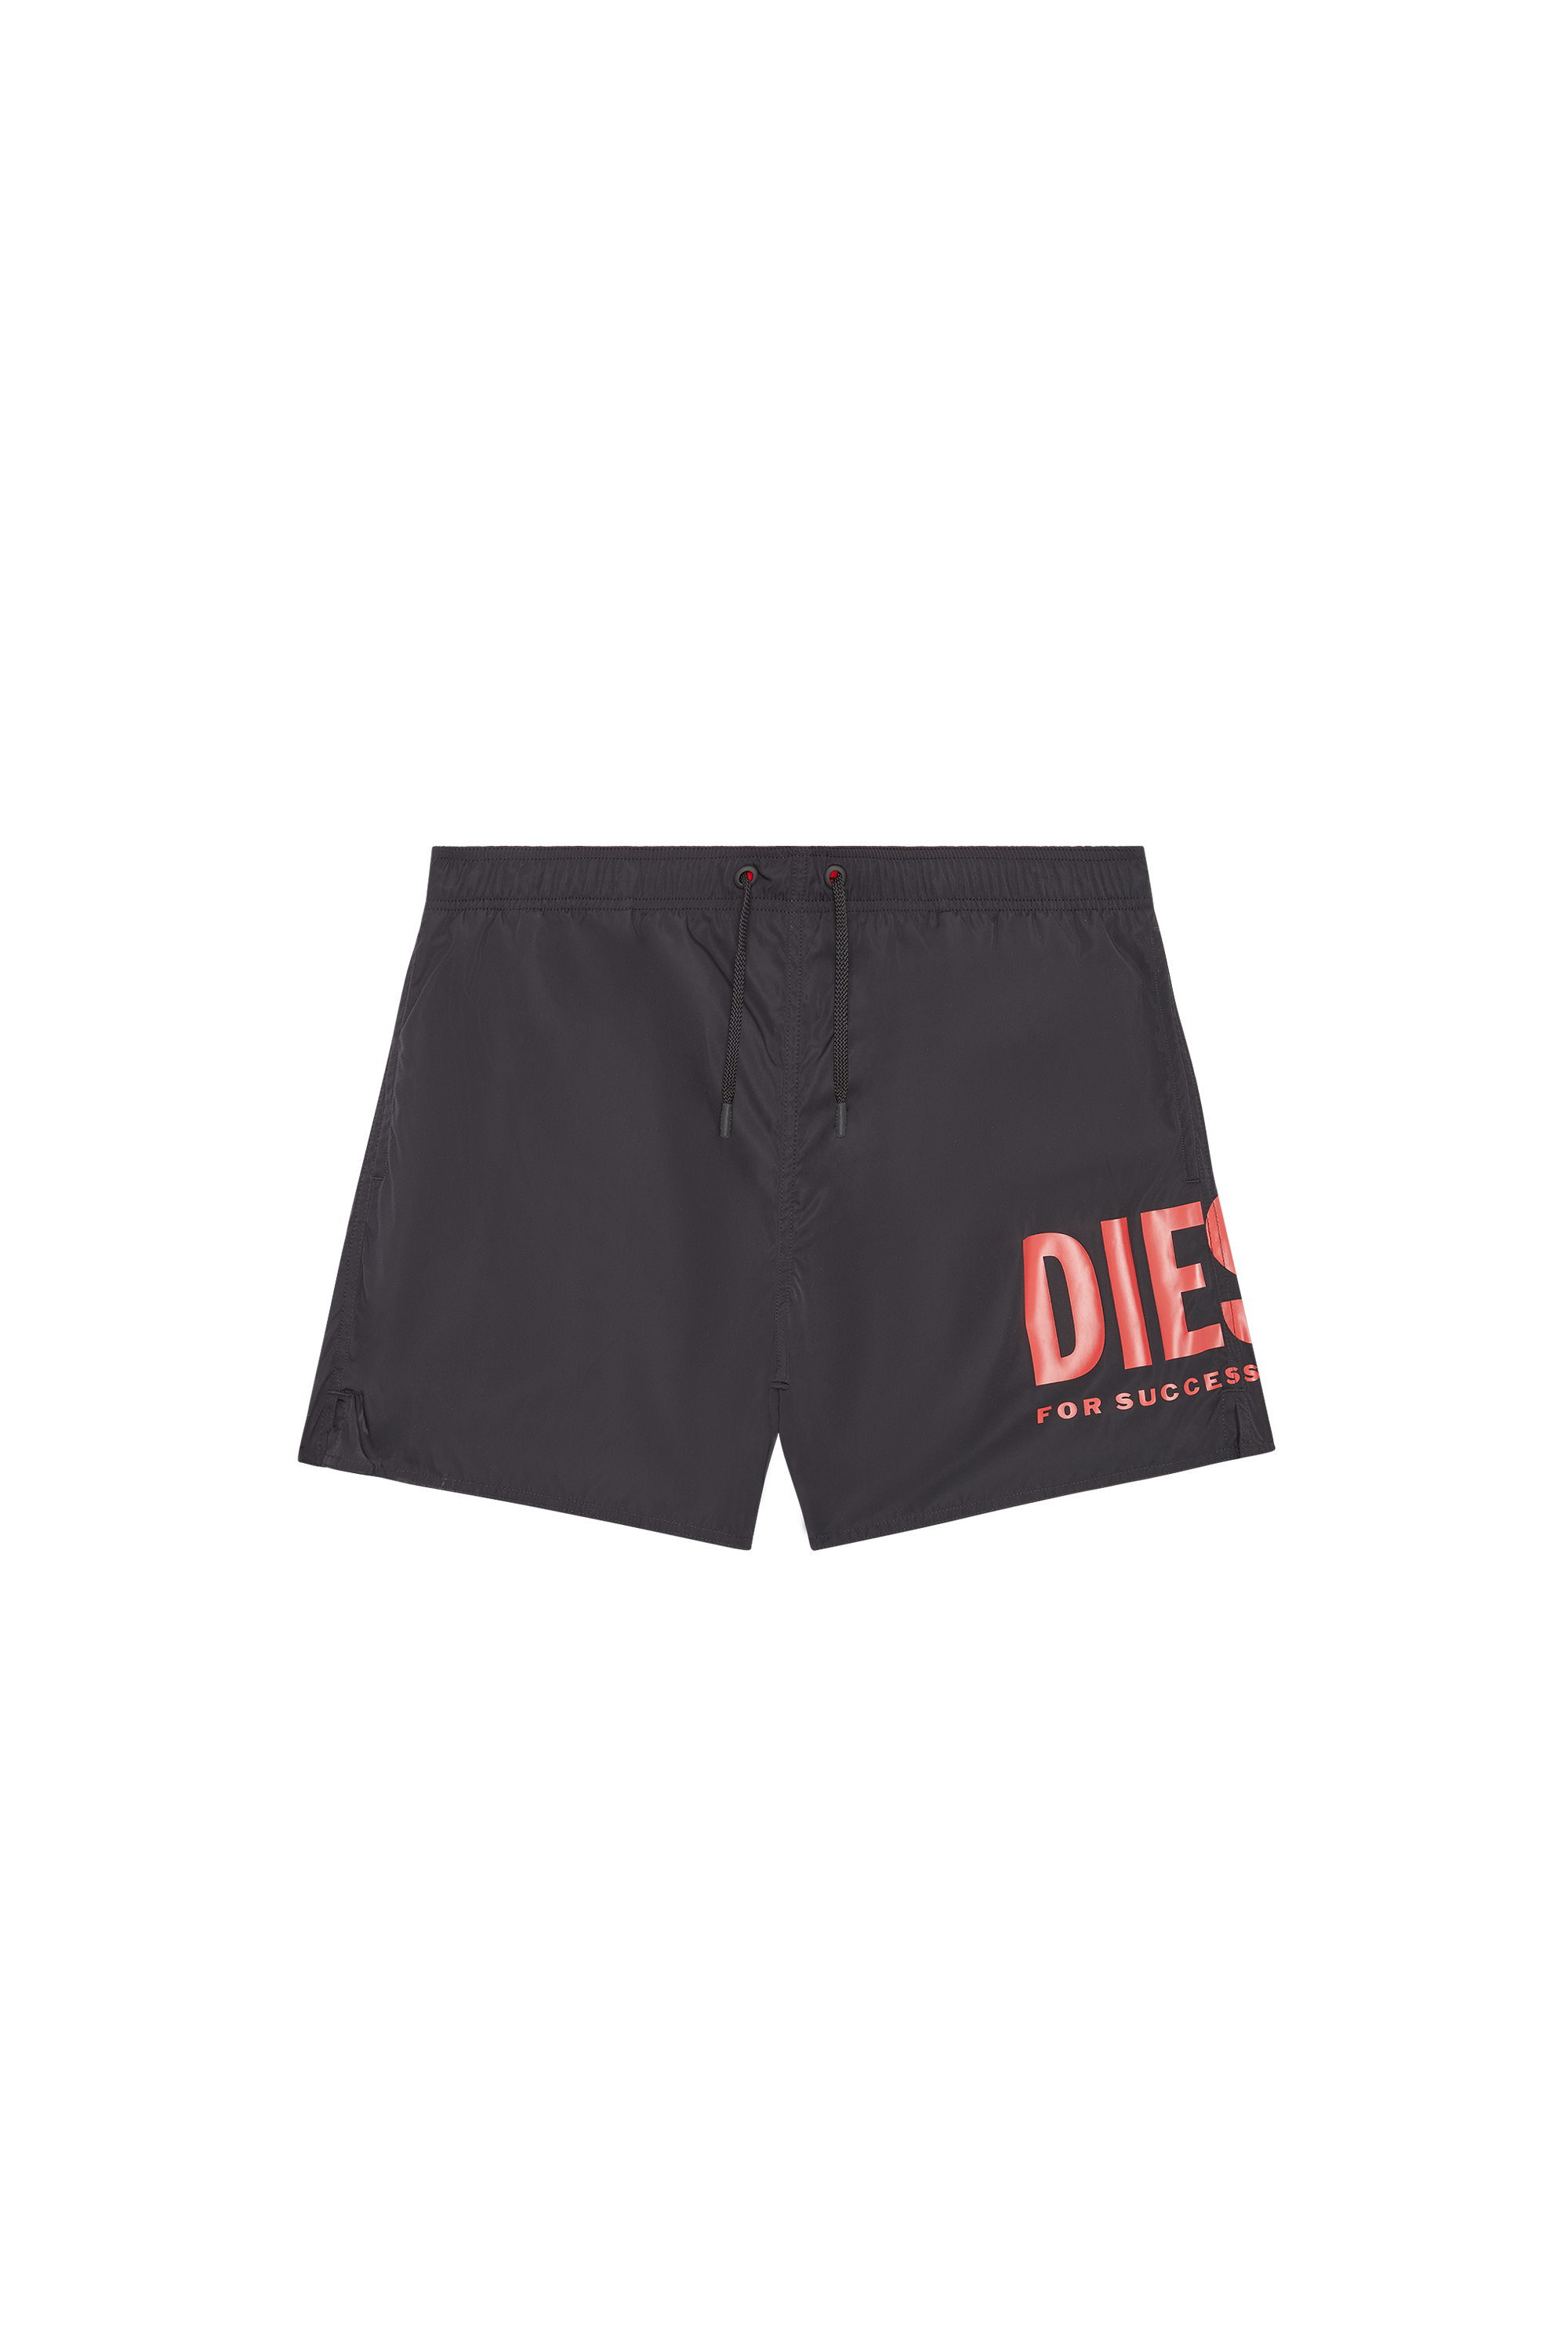 Diesel - Mittellange Bade-Shorts mit Maxi-Logo - Badeshorts - Herren - Schwarz